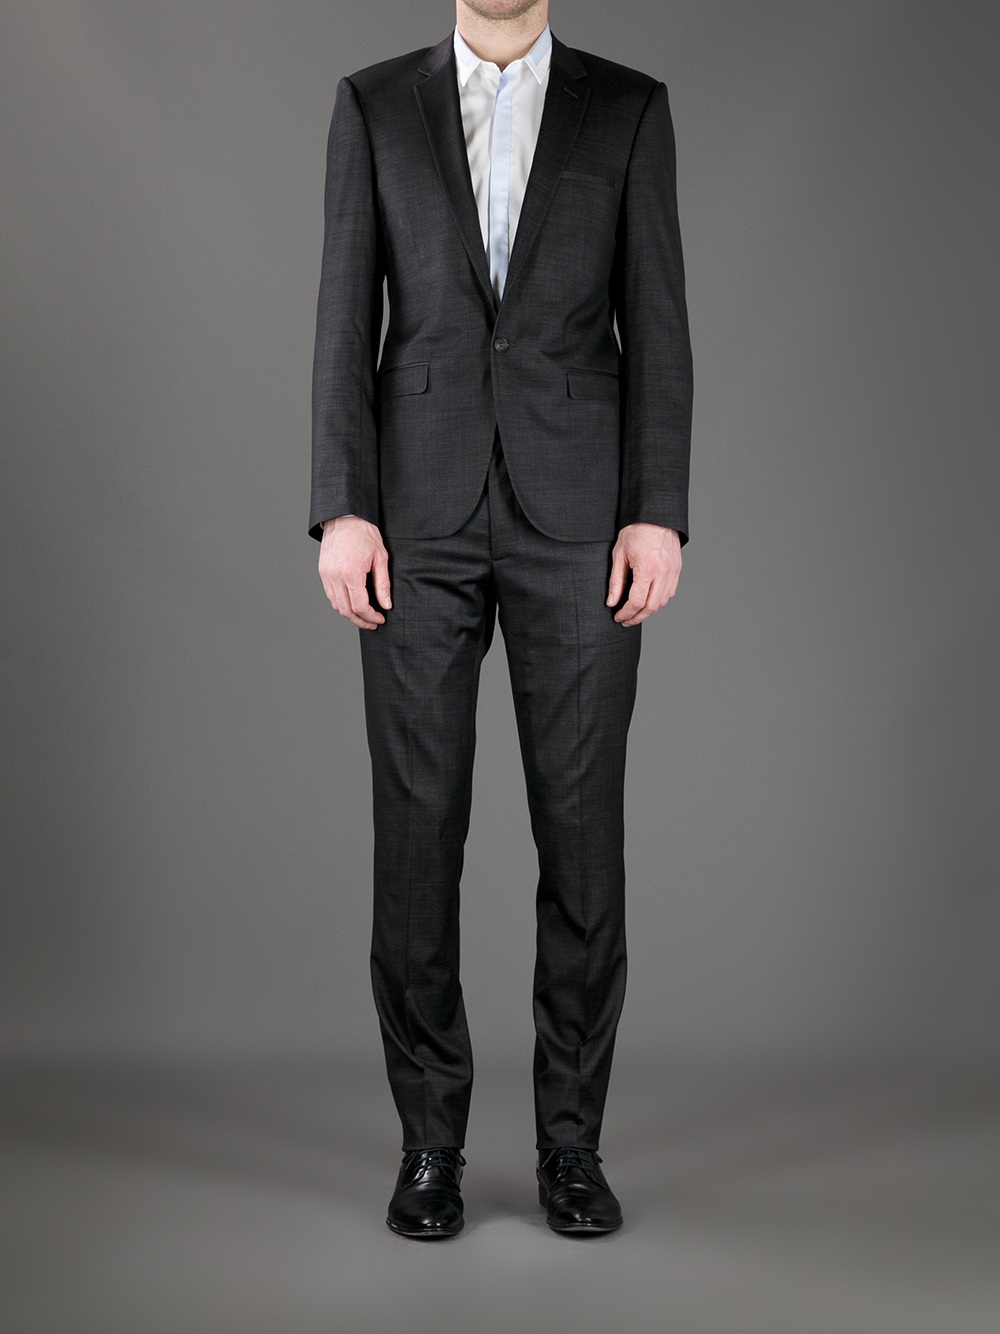 Lyst - Calvin Klein Suit Jacket in Gray for Men